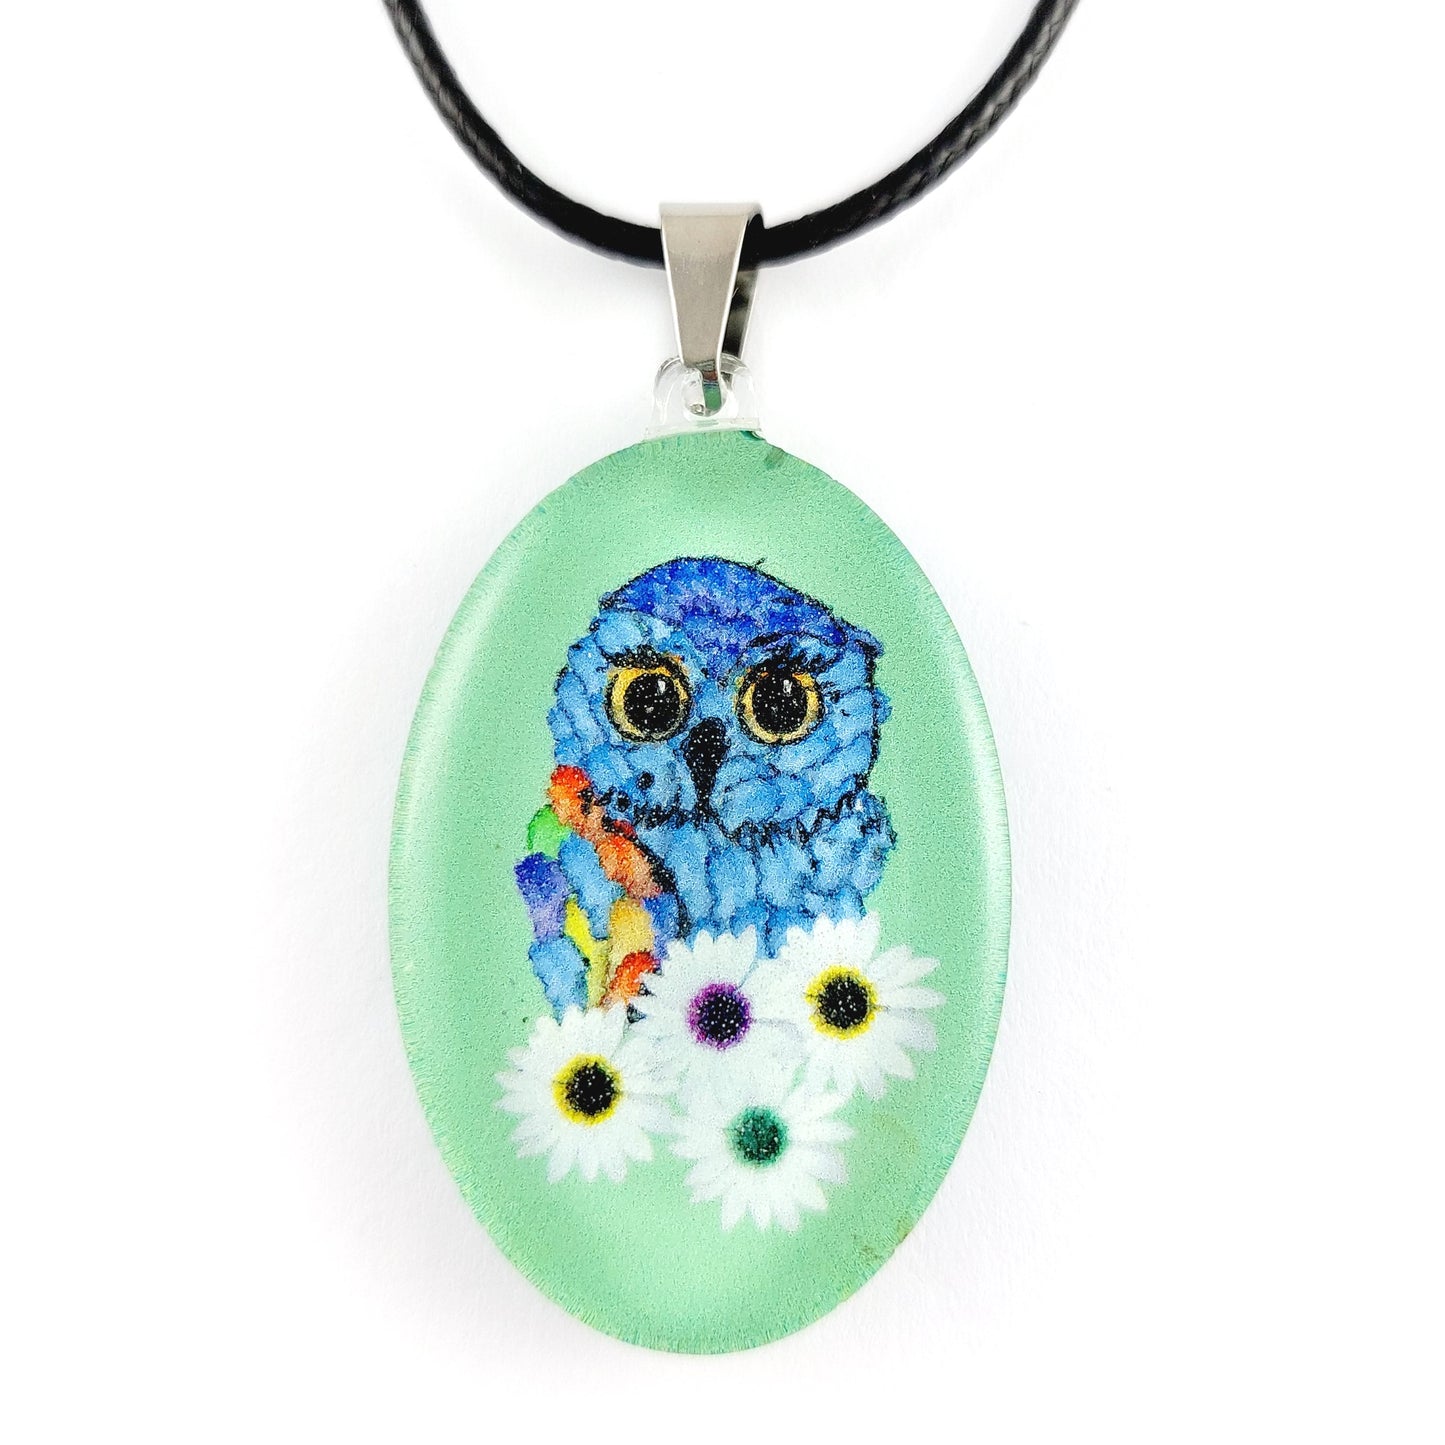 Green Owl Pendant & Earring Set